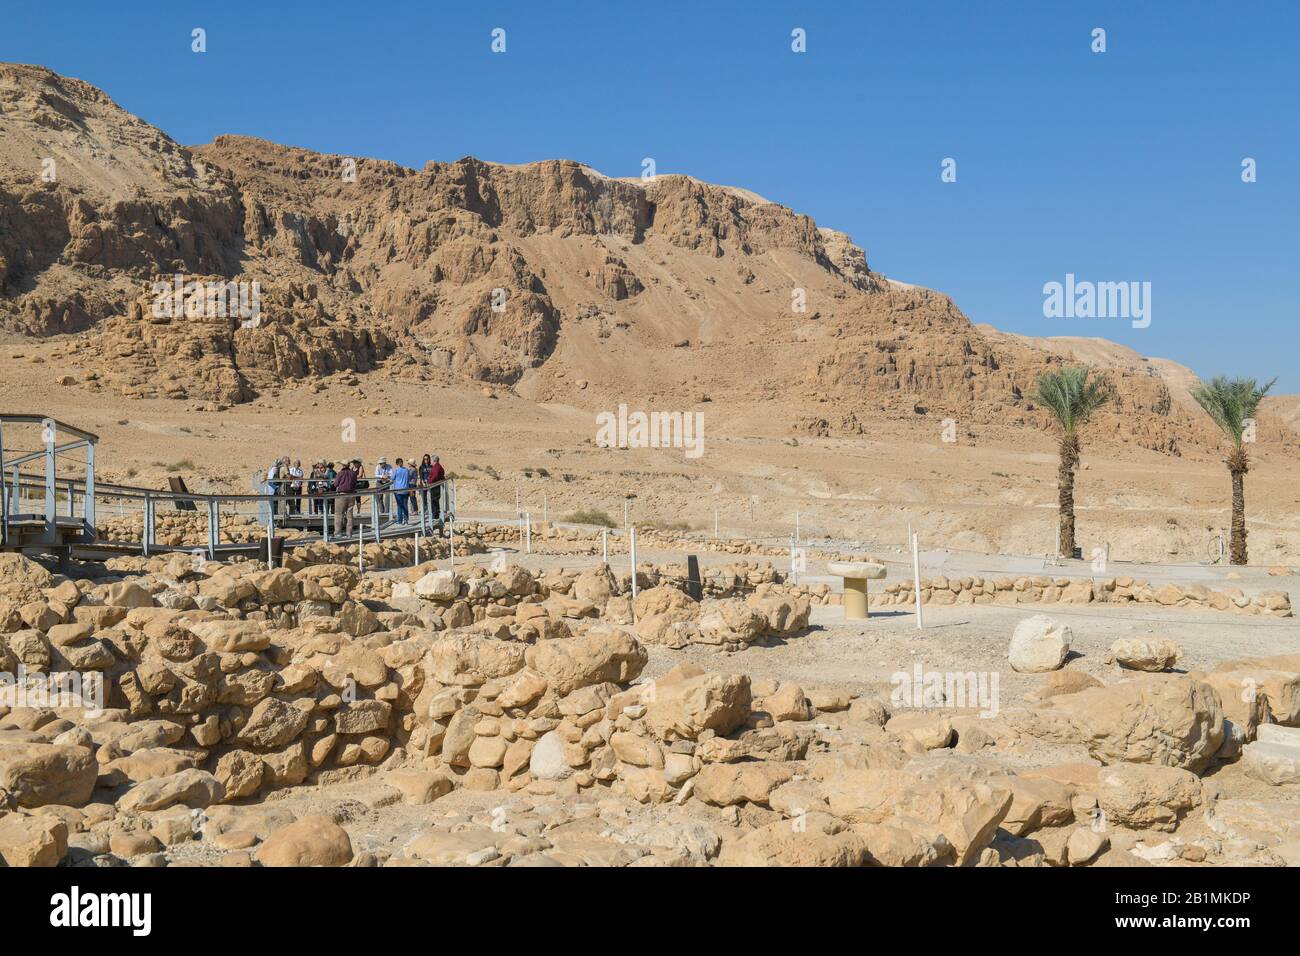 Felslandschaft, Palmen an der Ausgrabungsstätte Qumran, Israel Stock Photo